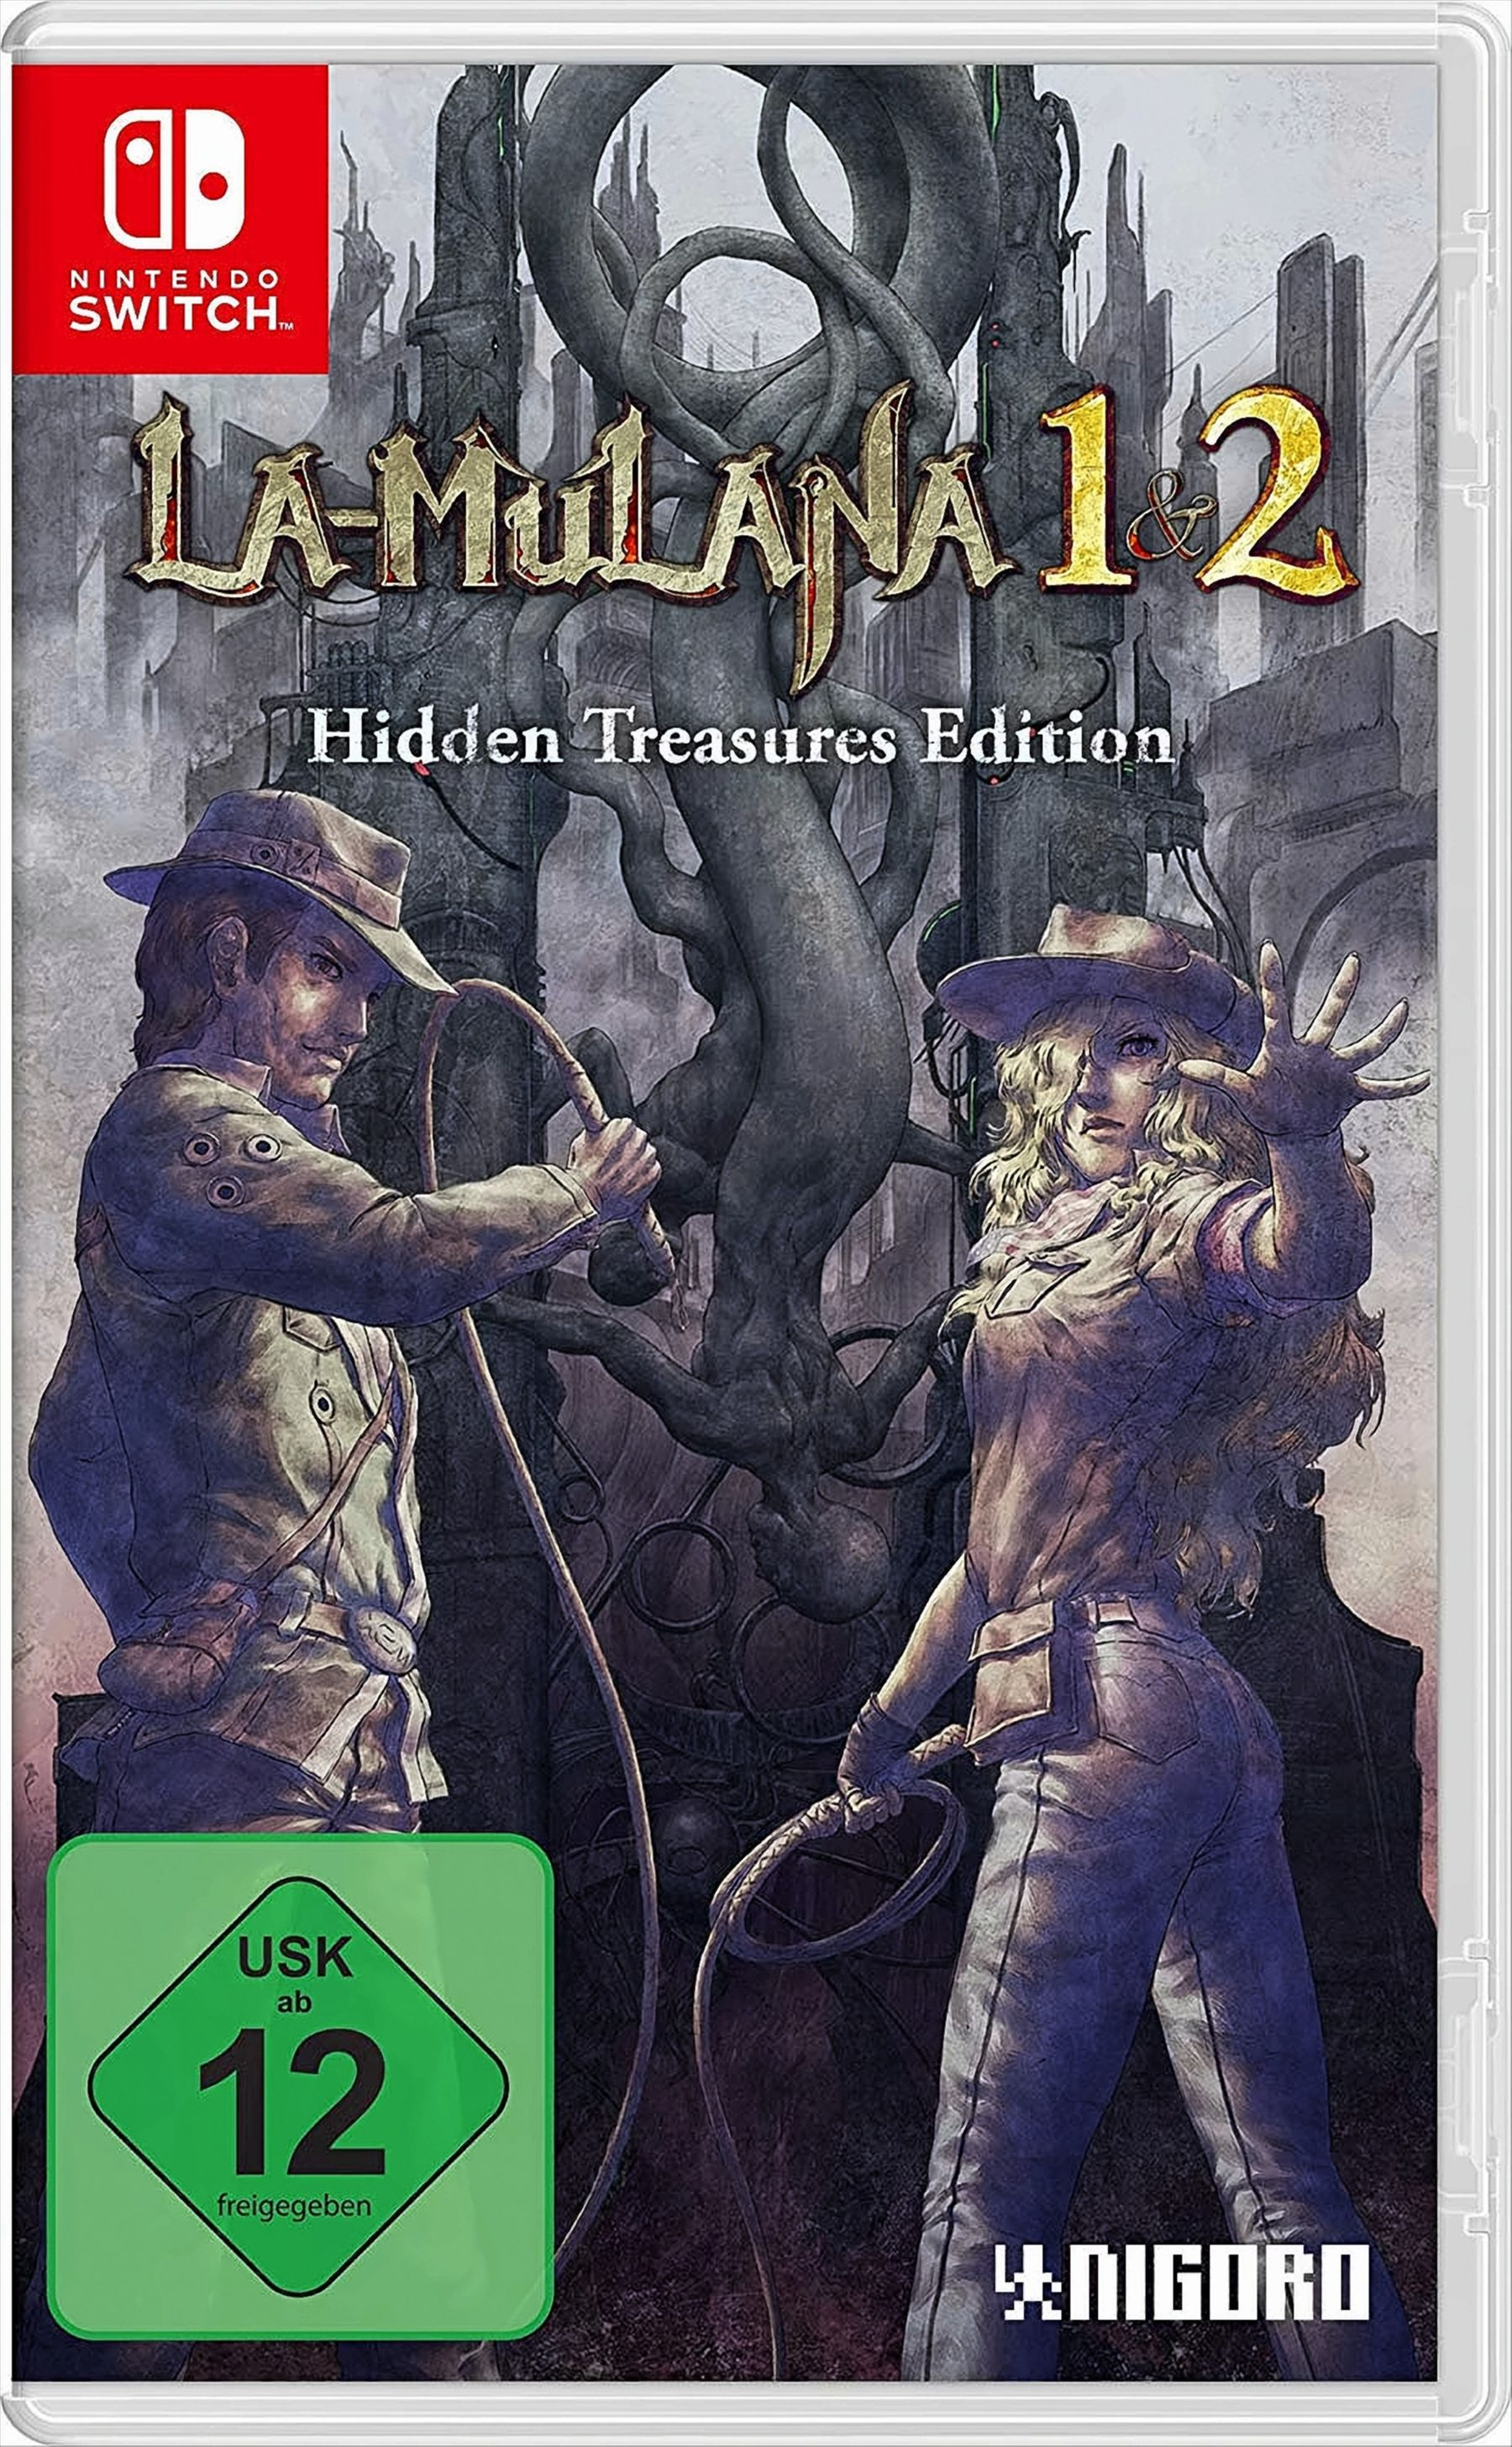 LA-MULANA 1 & [Nintendo - Switch] Treasures Edition Hidden 2